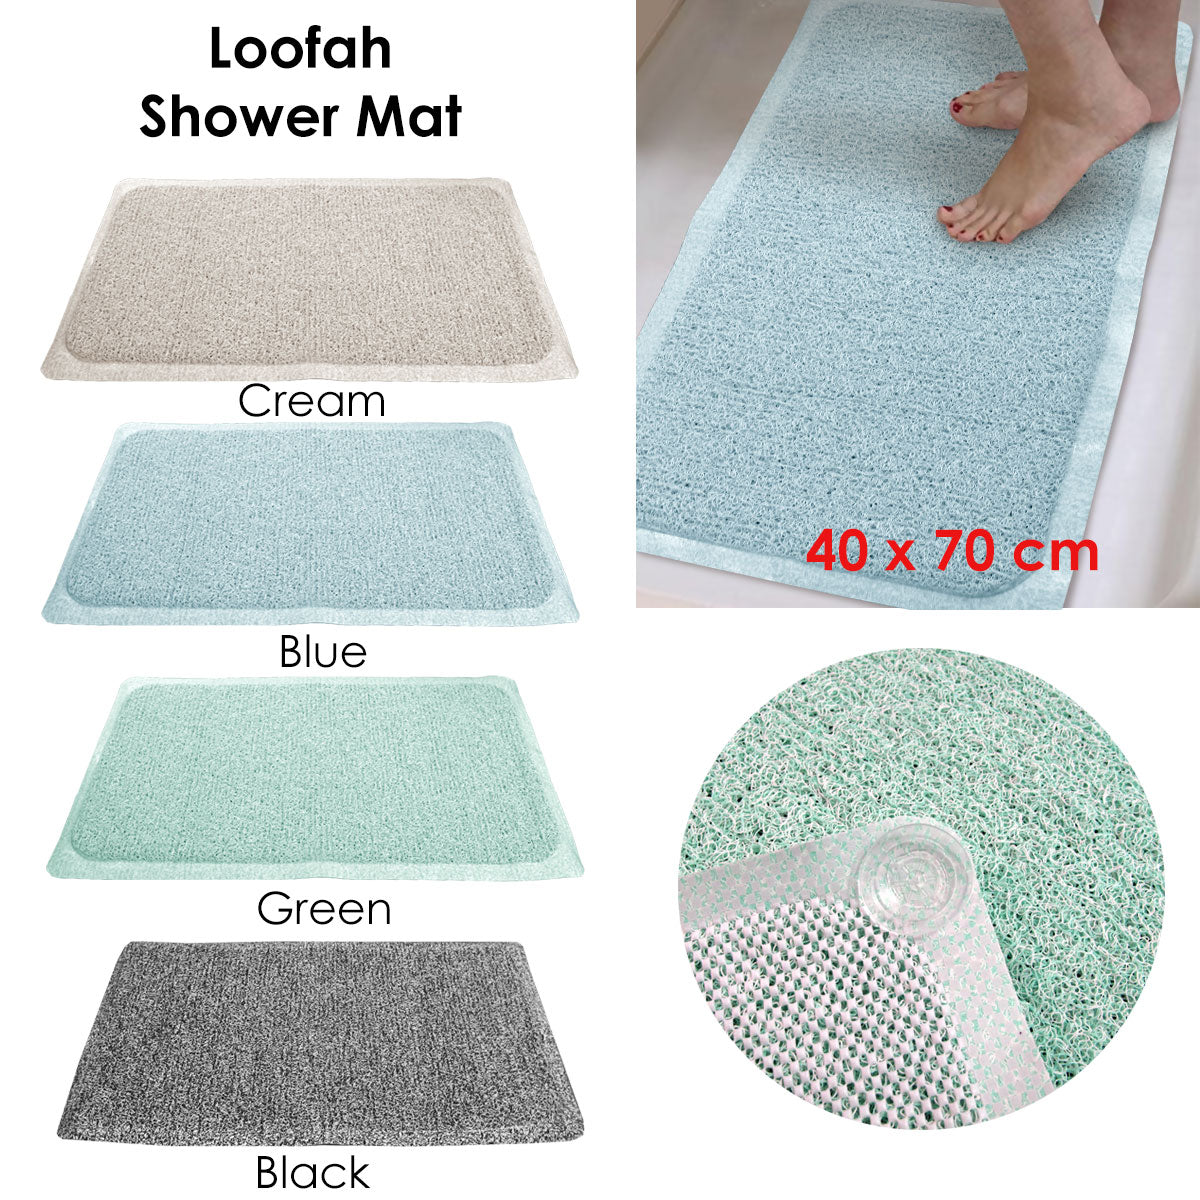 Loofah Shower Mat Cream - Newstart Furniture